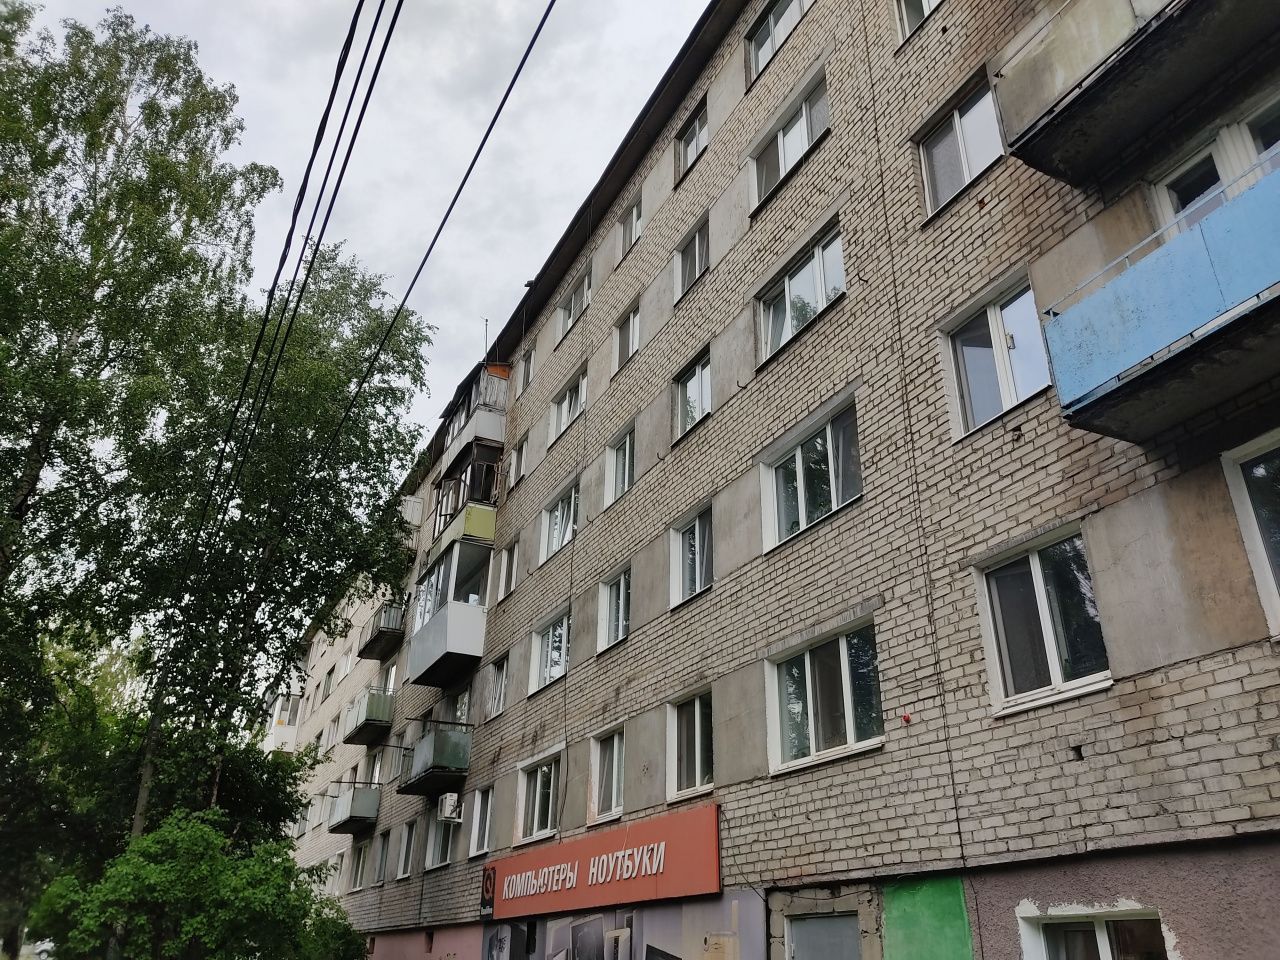 Управляющая компания "Серов Веста" "отстояла" дом №3 по улице Февральской Революции?